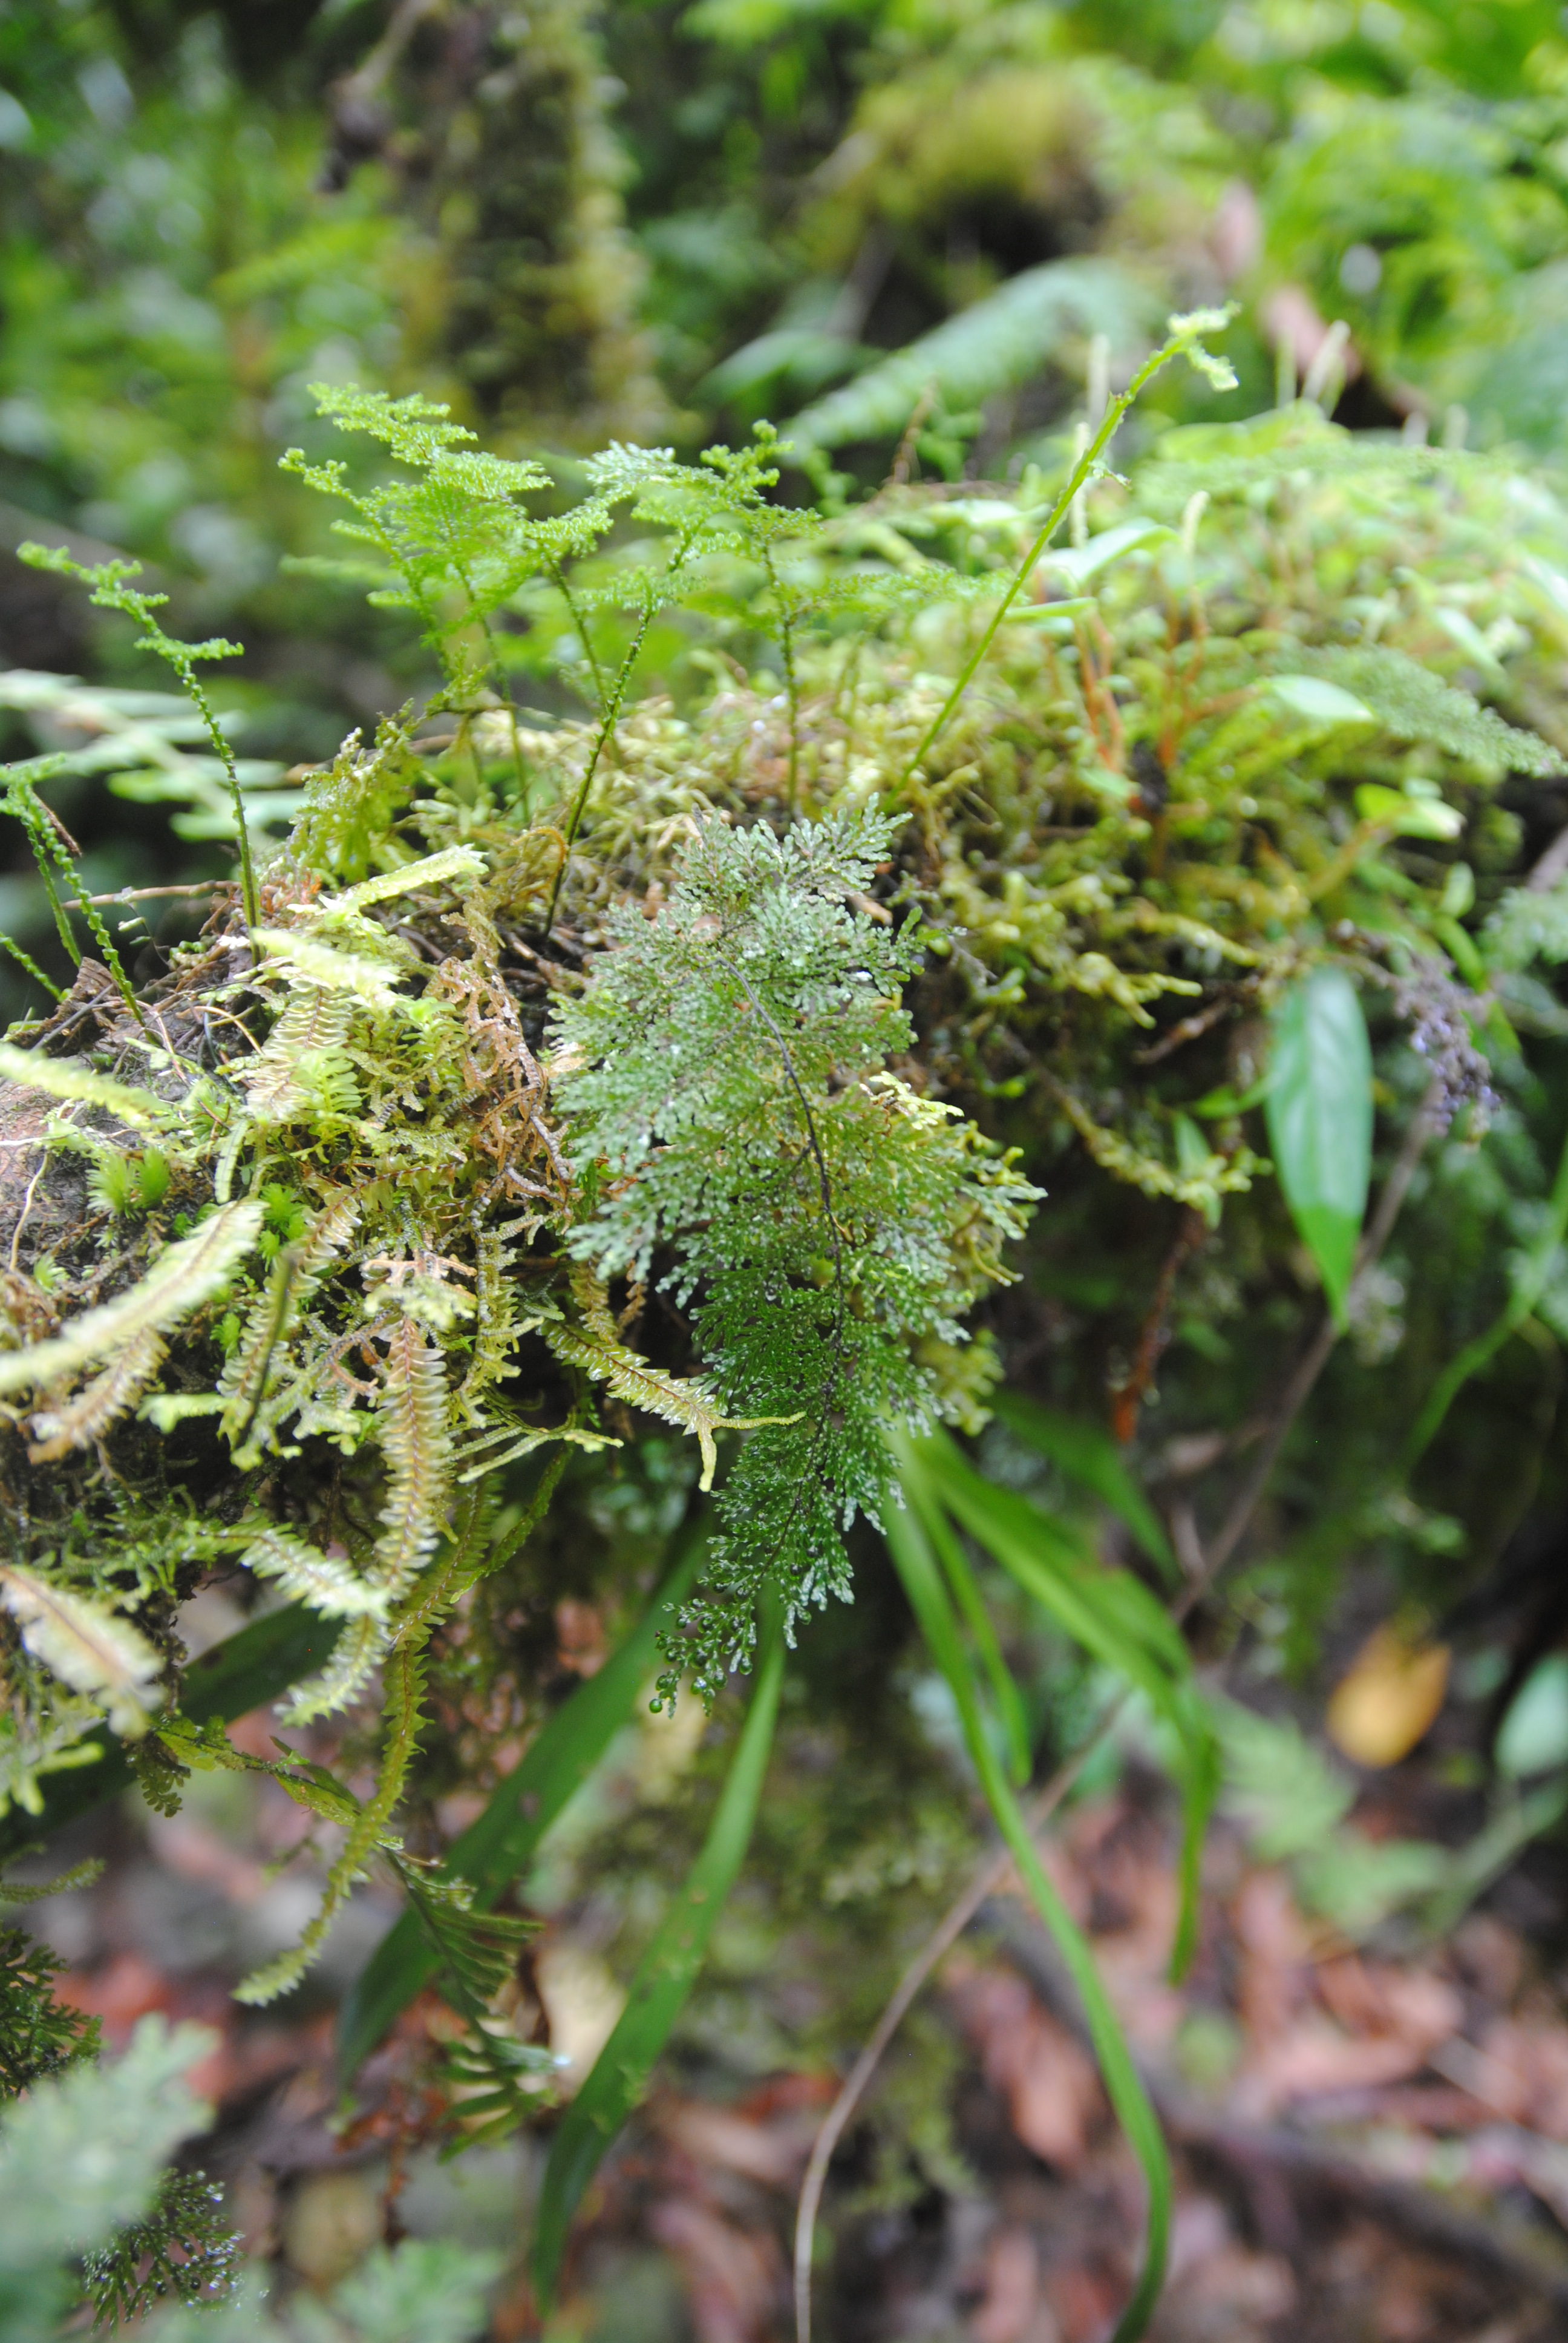 Hymenophyllum reinwardtii